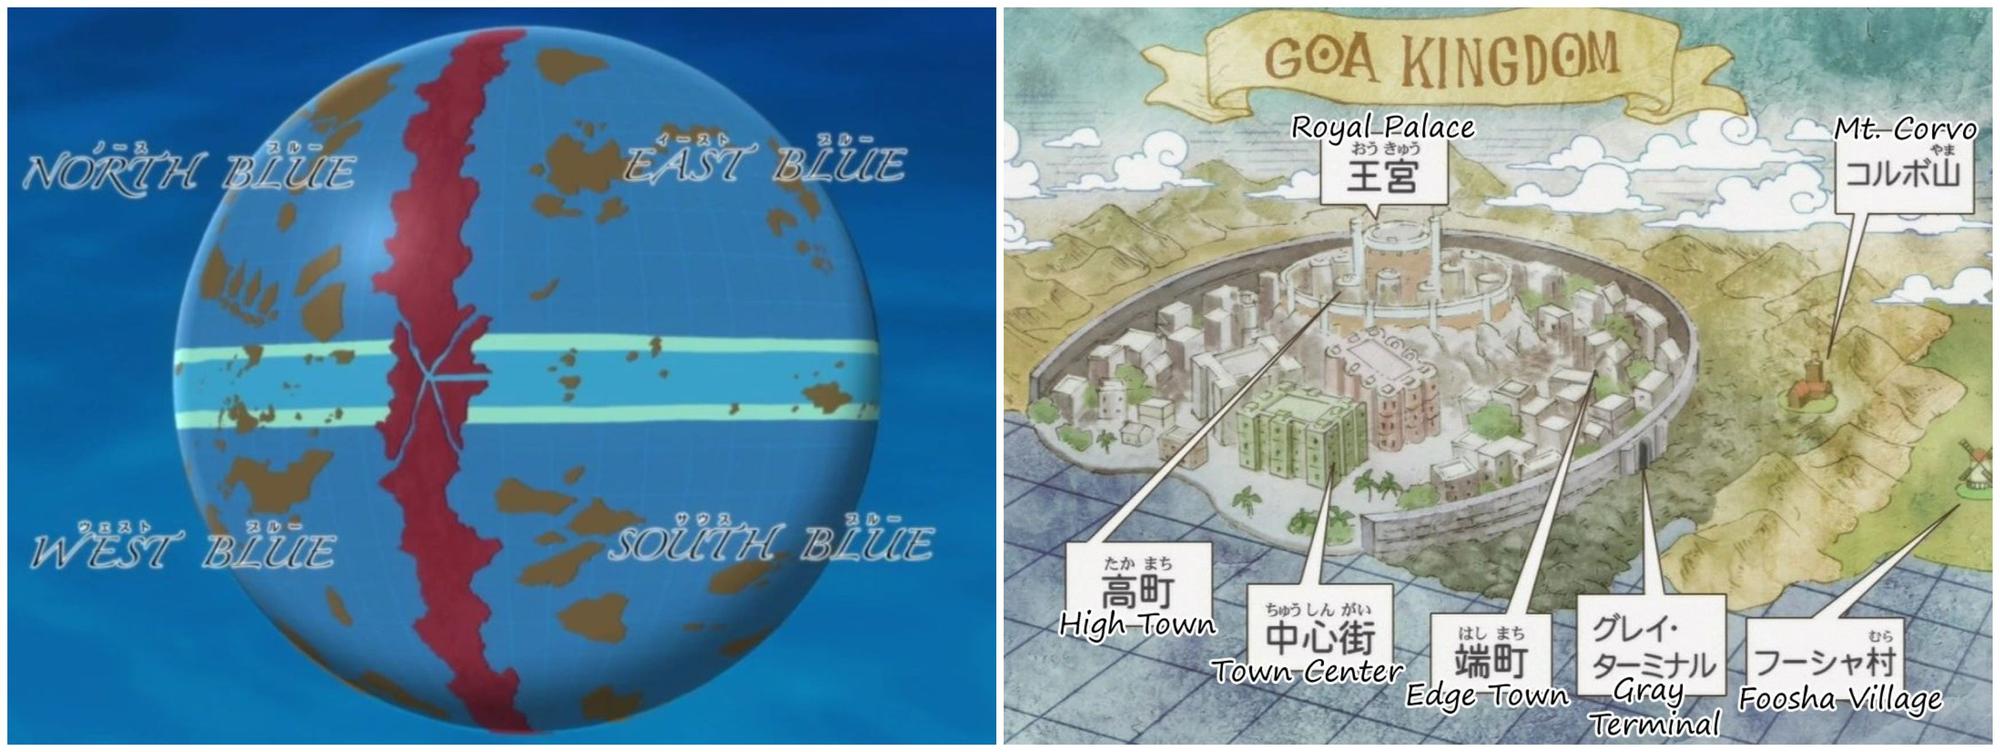 El mundo de One Piece y el Reino de Goa